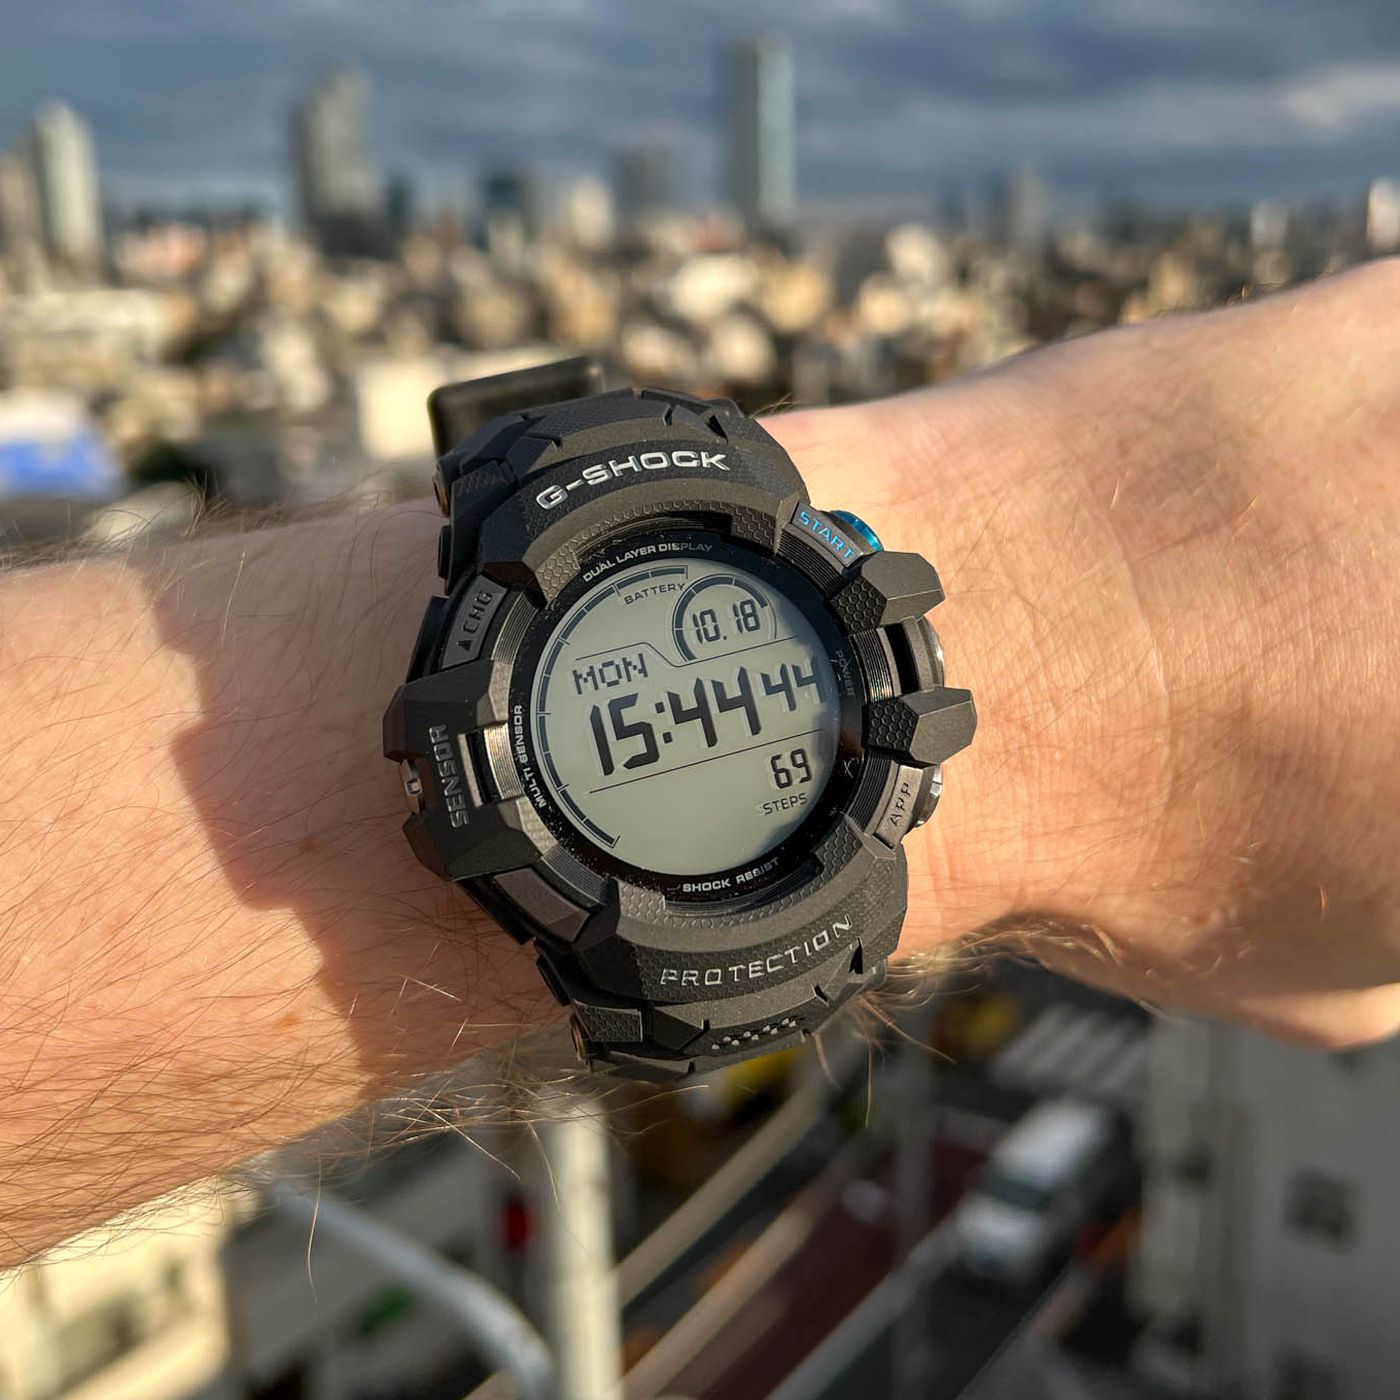 G-Shock watches